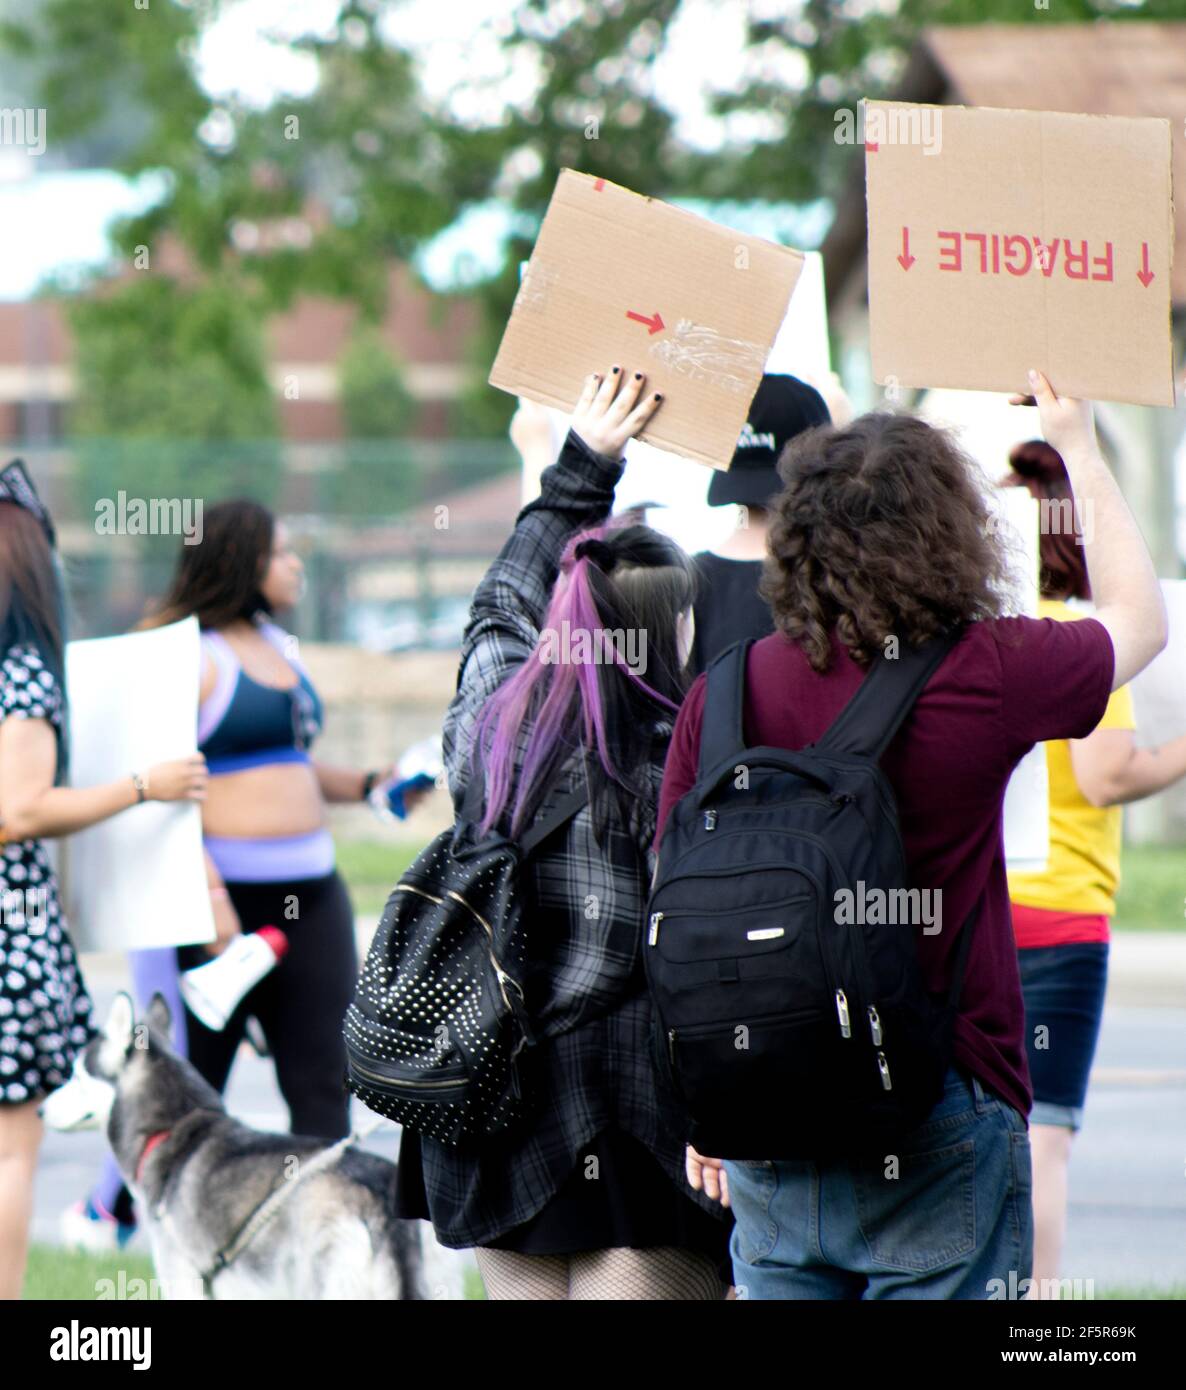 Jóvenes que participan en protestas silenciosas y pacíficas a lo largo de la calle con carteles y carteles de cartón Foto de stock